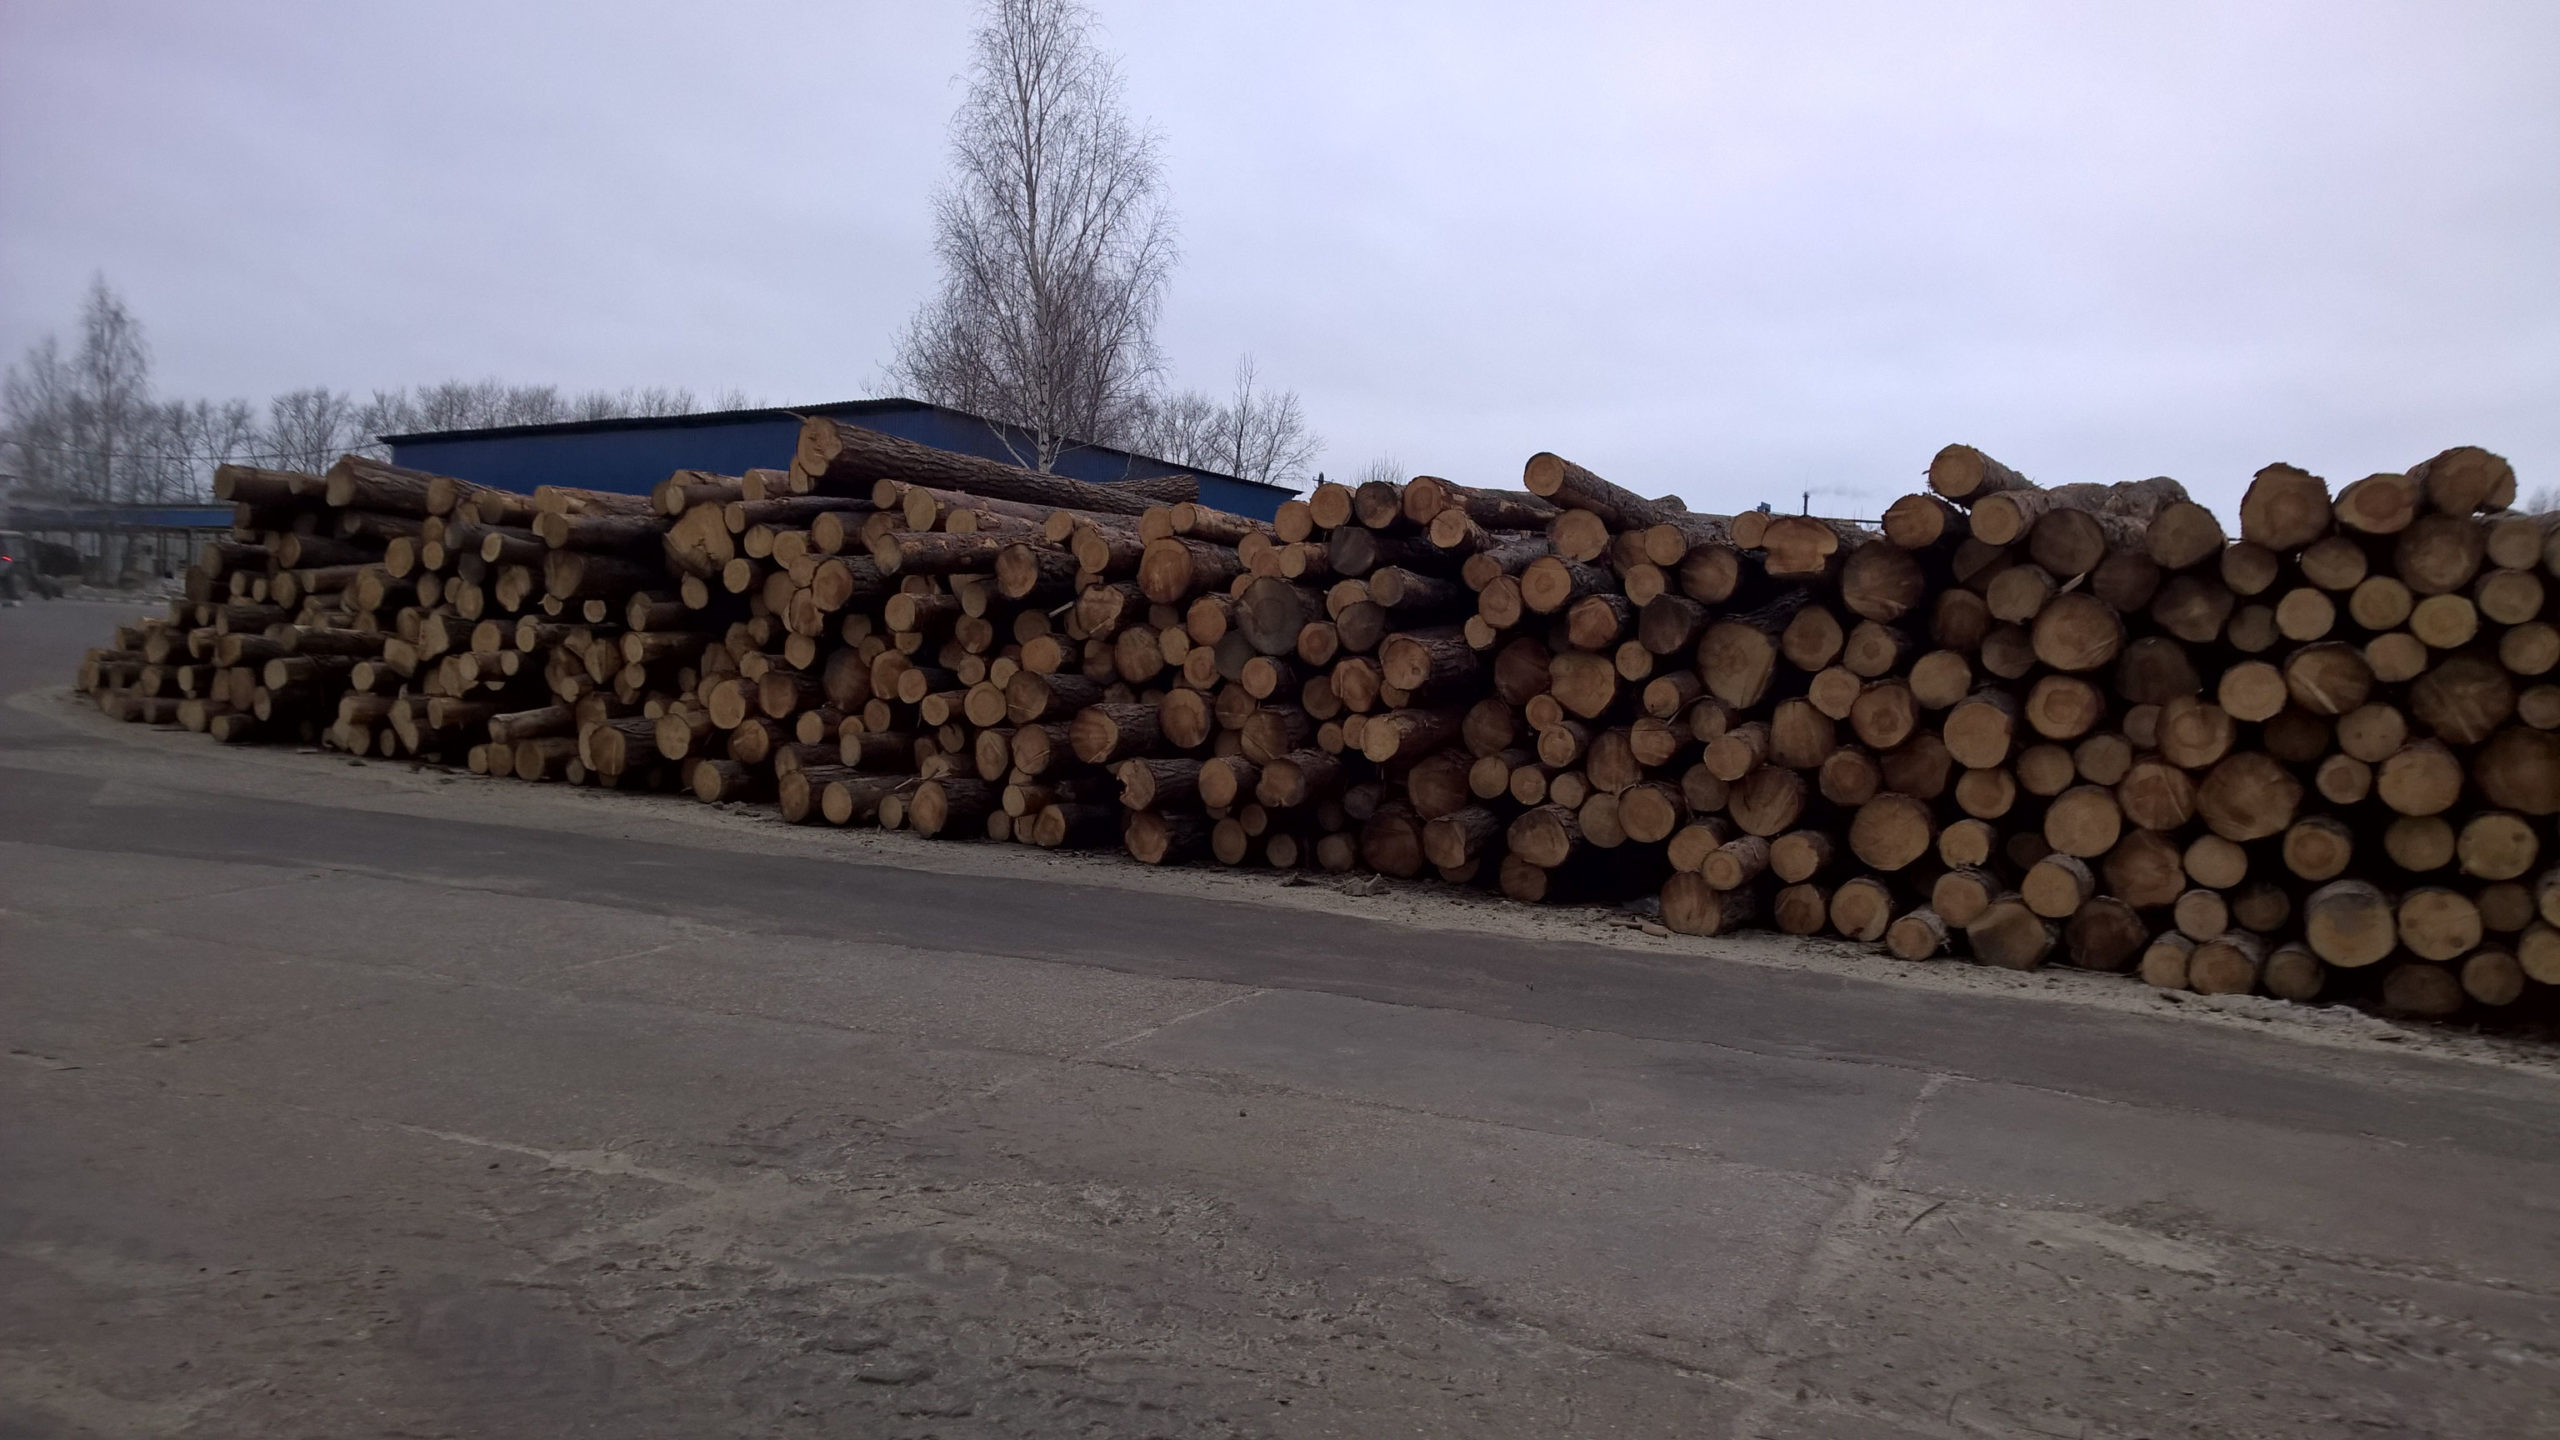 Полнокомплектная комбинированная линия лесопиления Soderhamn Eriksson для переработки тонкомерного пиловочника Производительностьлинии 150 000 куб.м. в год при работе в две смены 7